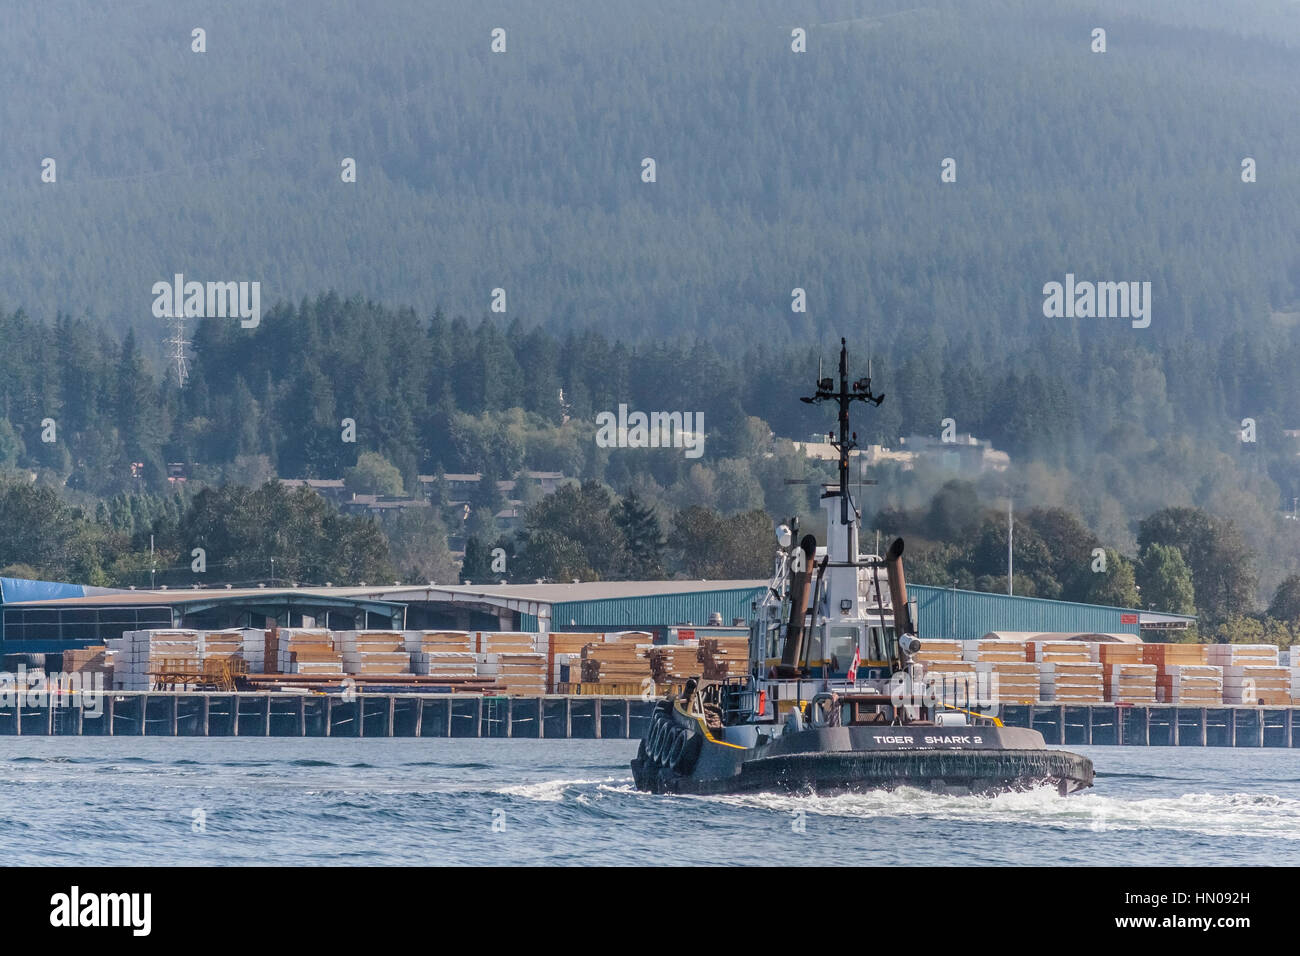 Il rimorchiatore 'Tiger Shark 2' è in corso verso un terminale marittimo wharf che viene impilato con legname, con North Vancouver in background. Foto Stock